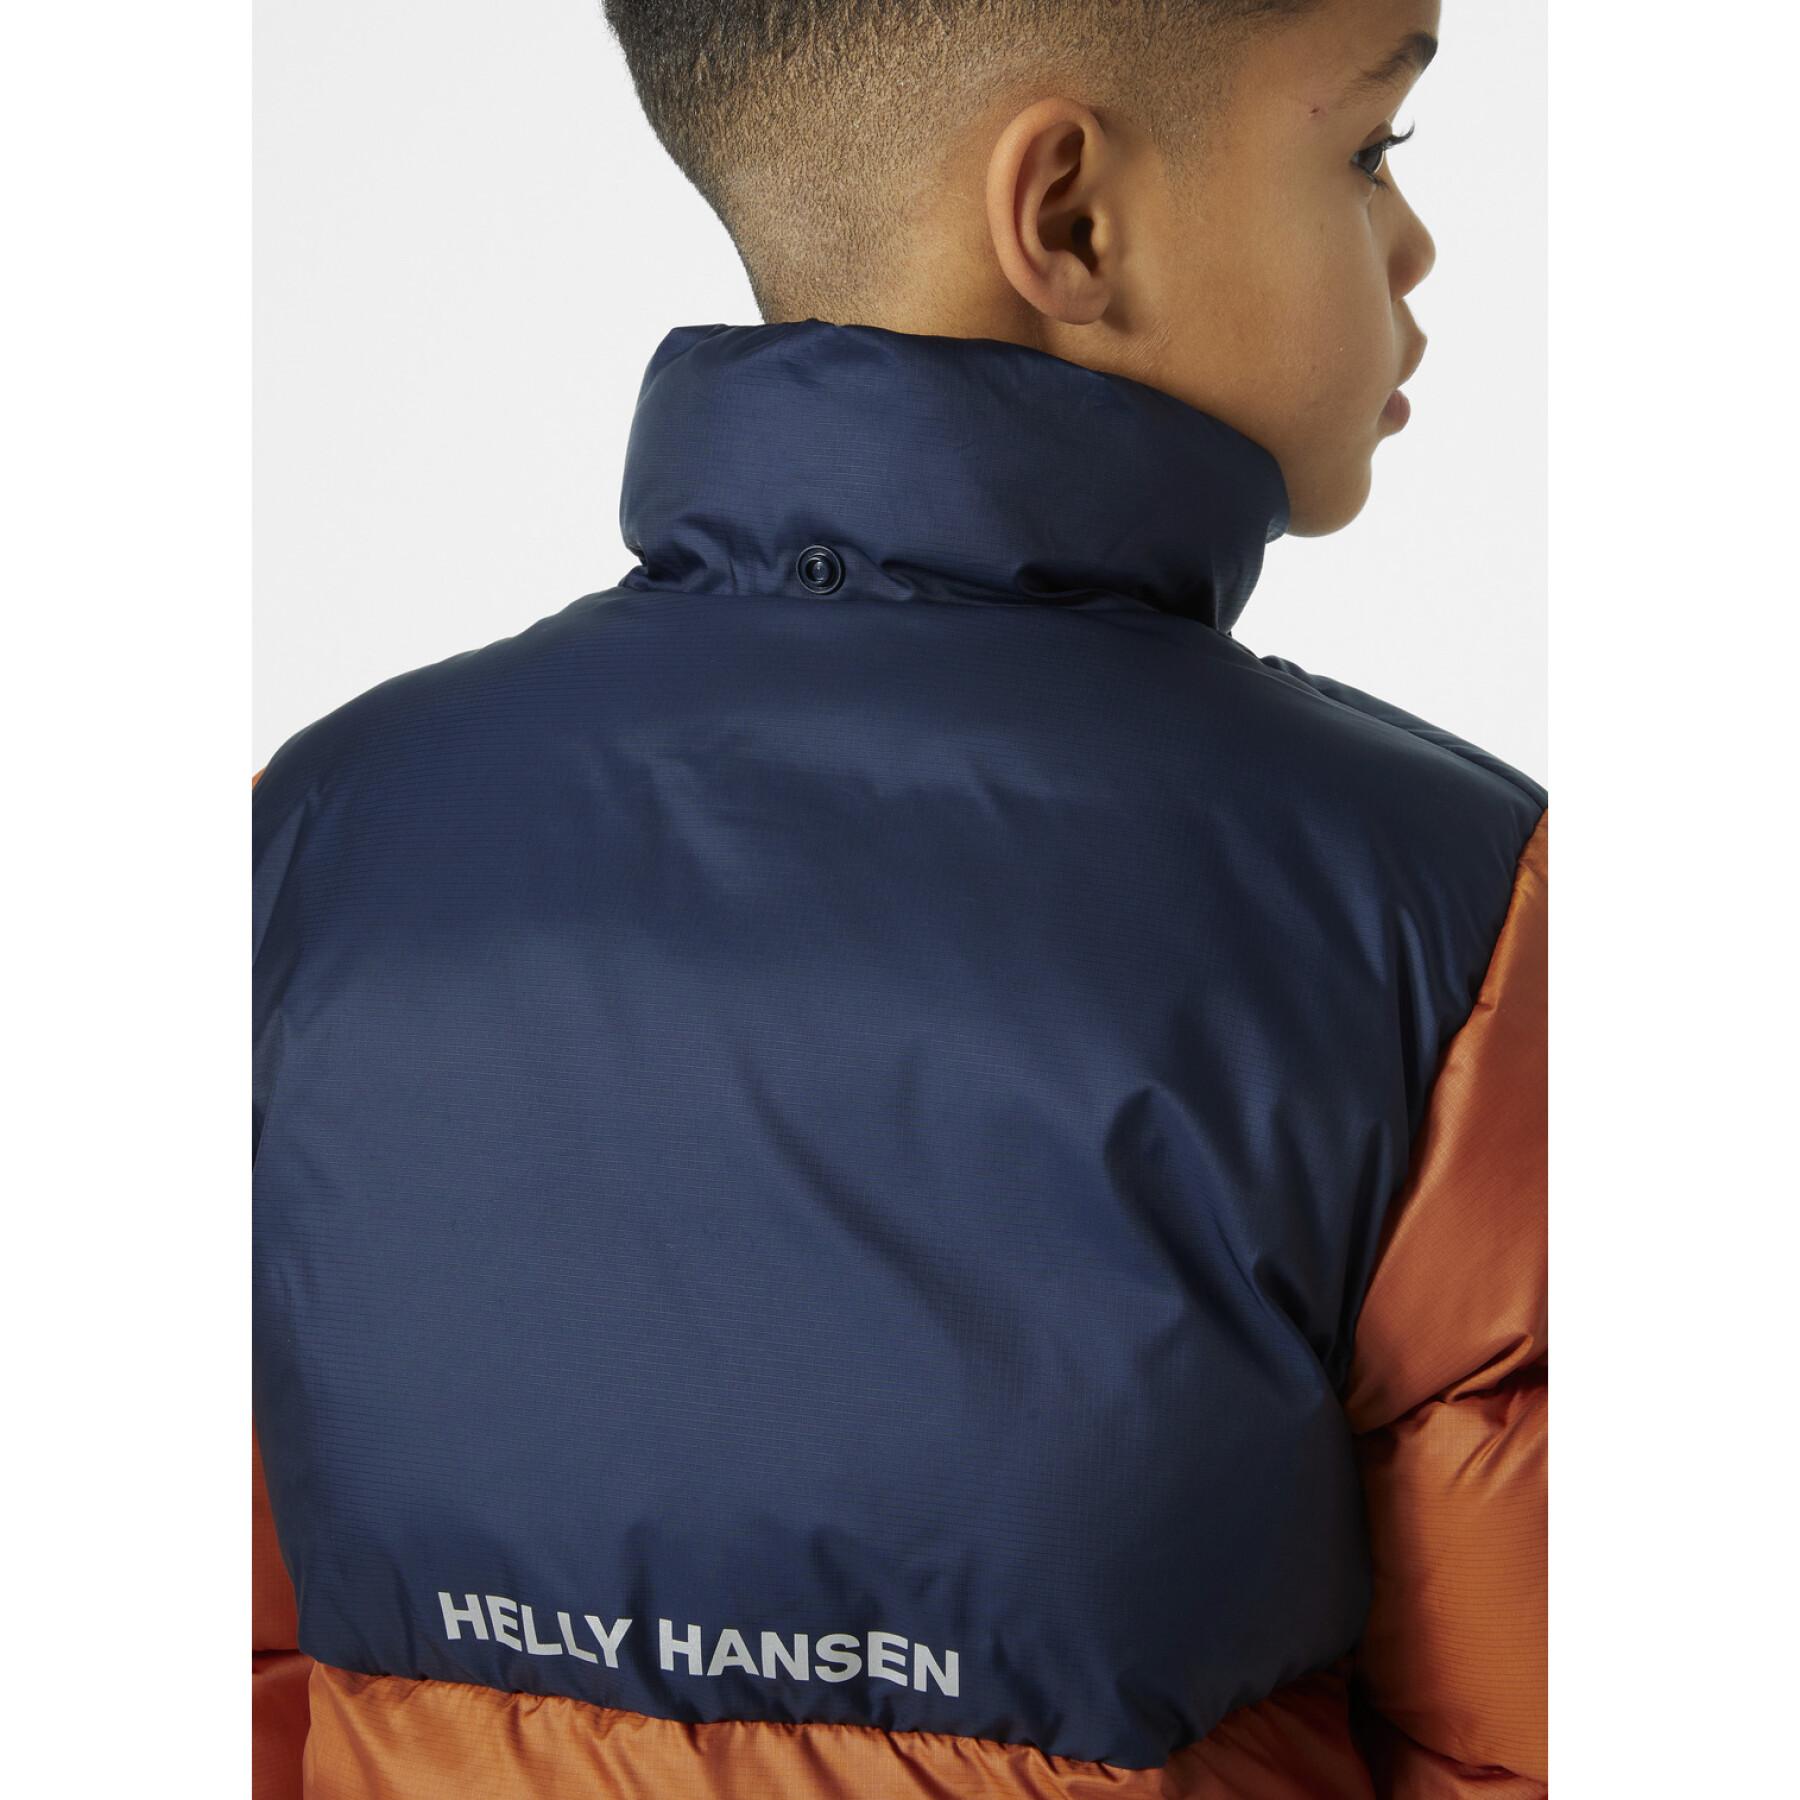 Kinder-Daunenjacke Helly Hansen Vision